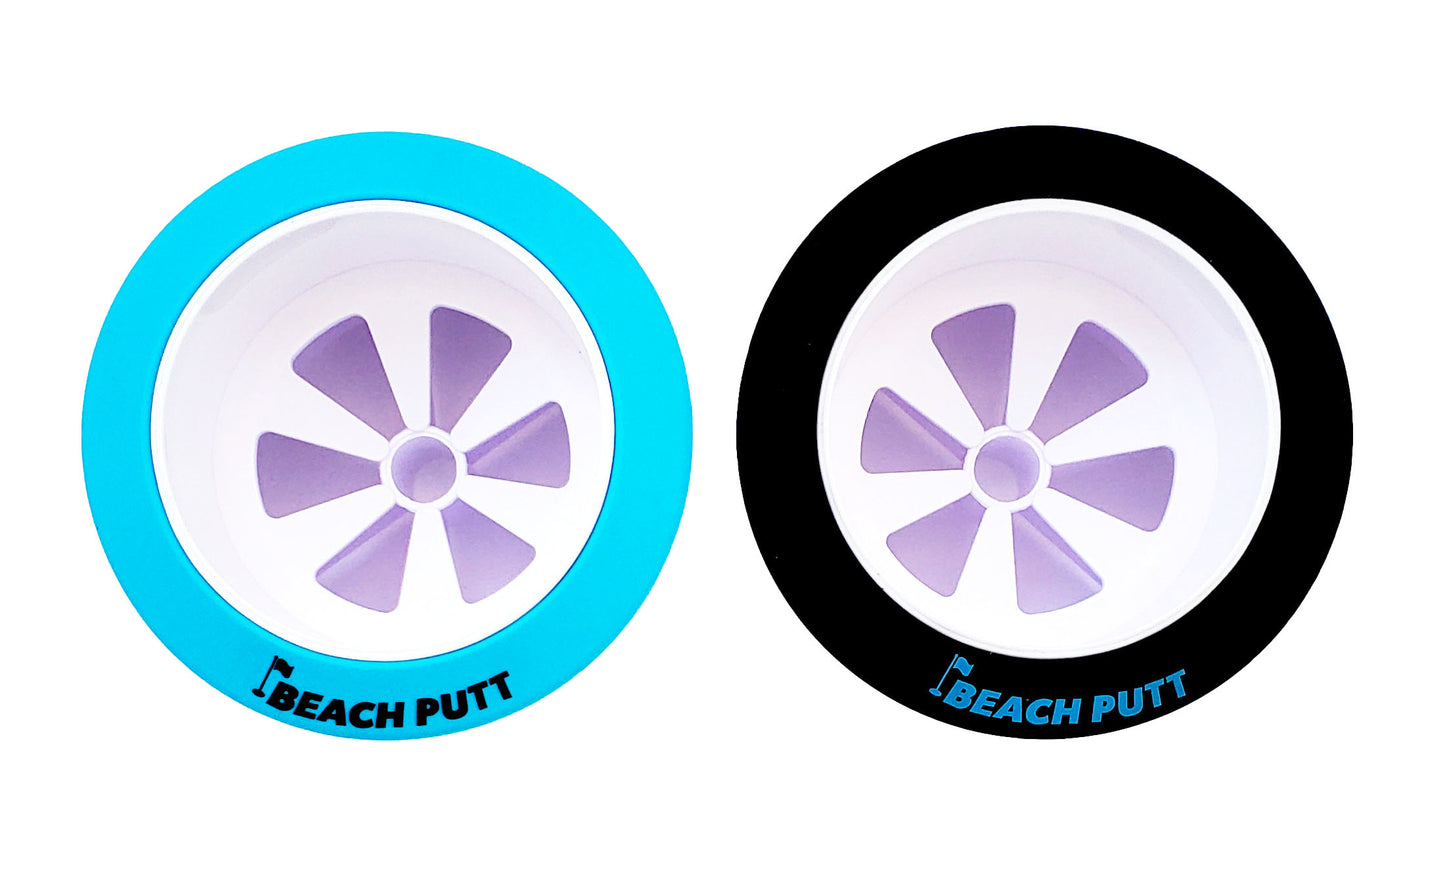 PRE-ORDER NOW - Original Beach Putt - Beach Golf Set - with (2) Adjustable Beach Putt Putters